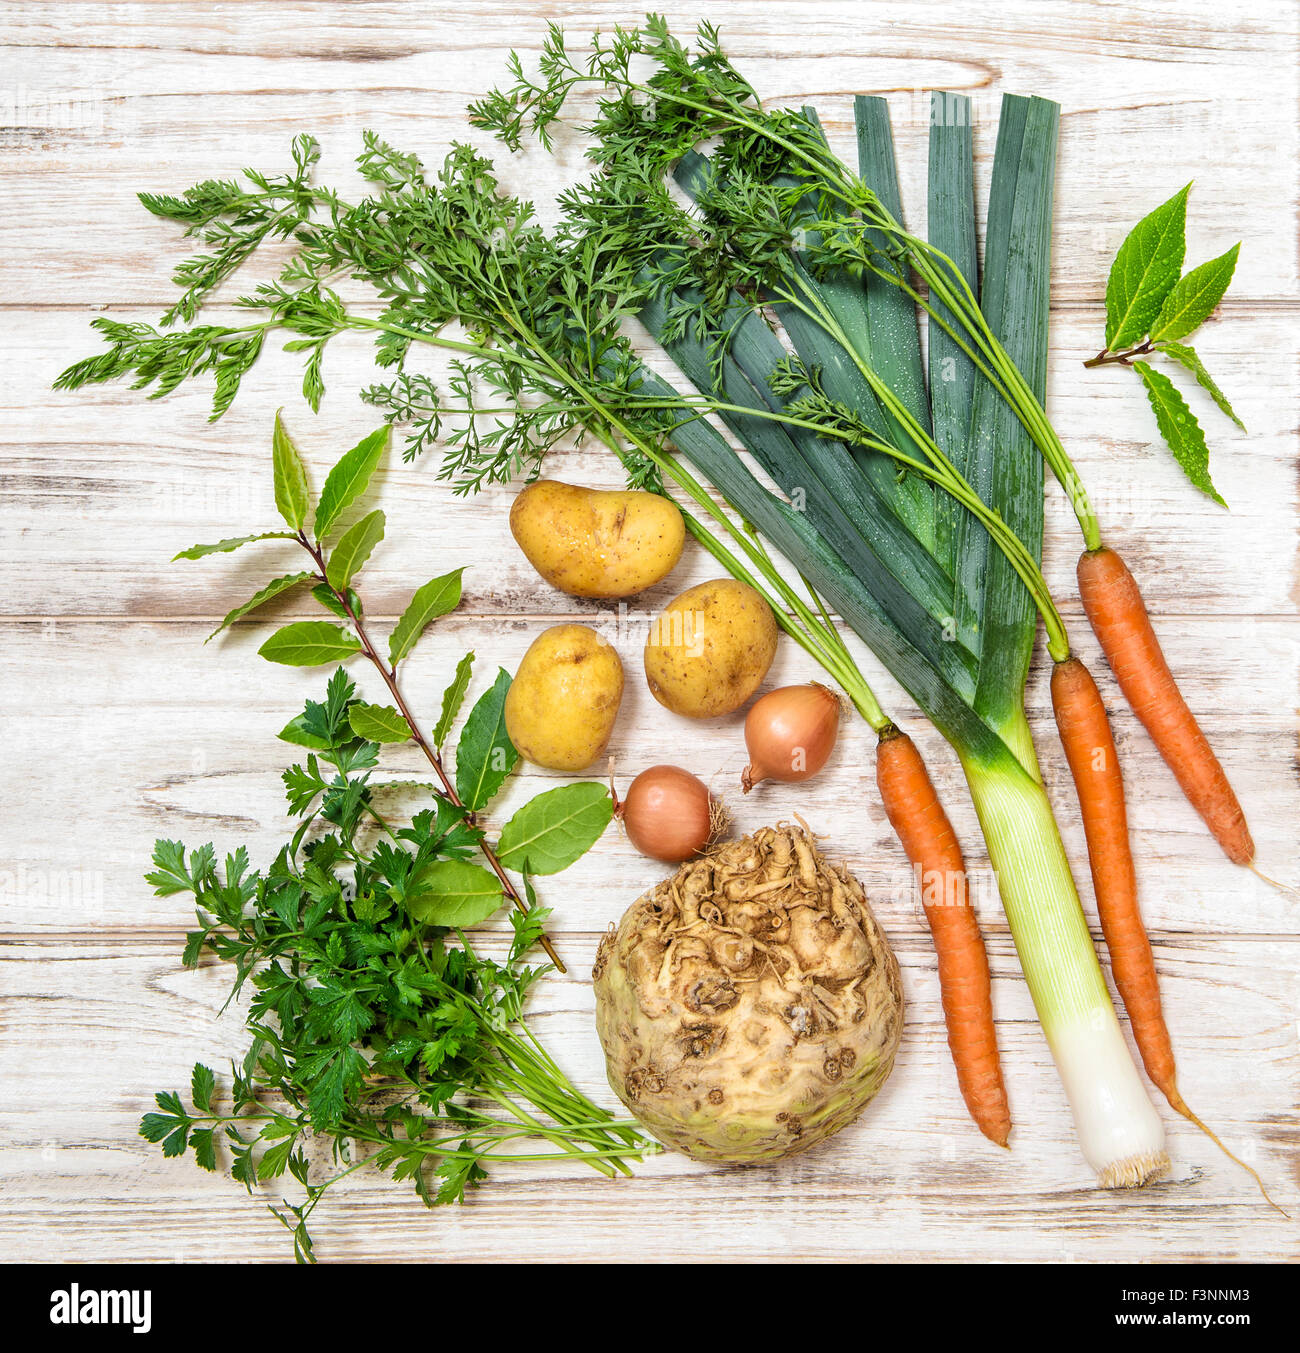 Les légumes frais biologiques. Poireau, carotte, oignon, persil, pommes de terre, céleri-rave, laurier feuilles. L'alimentation saine Banque D'Images